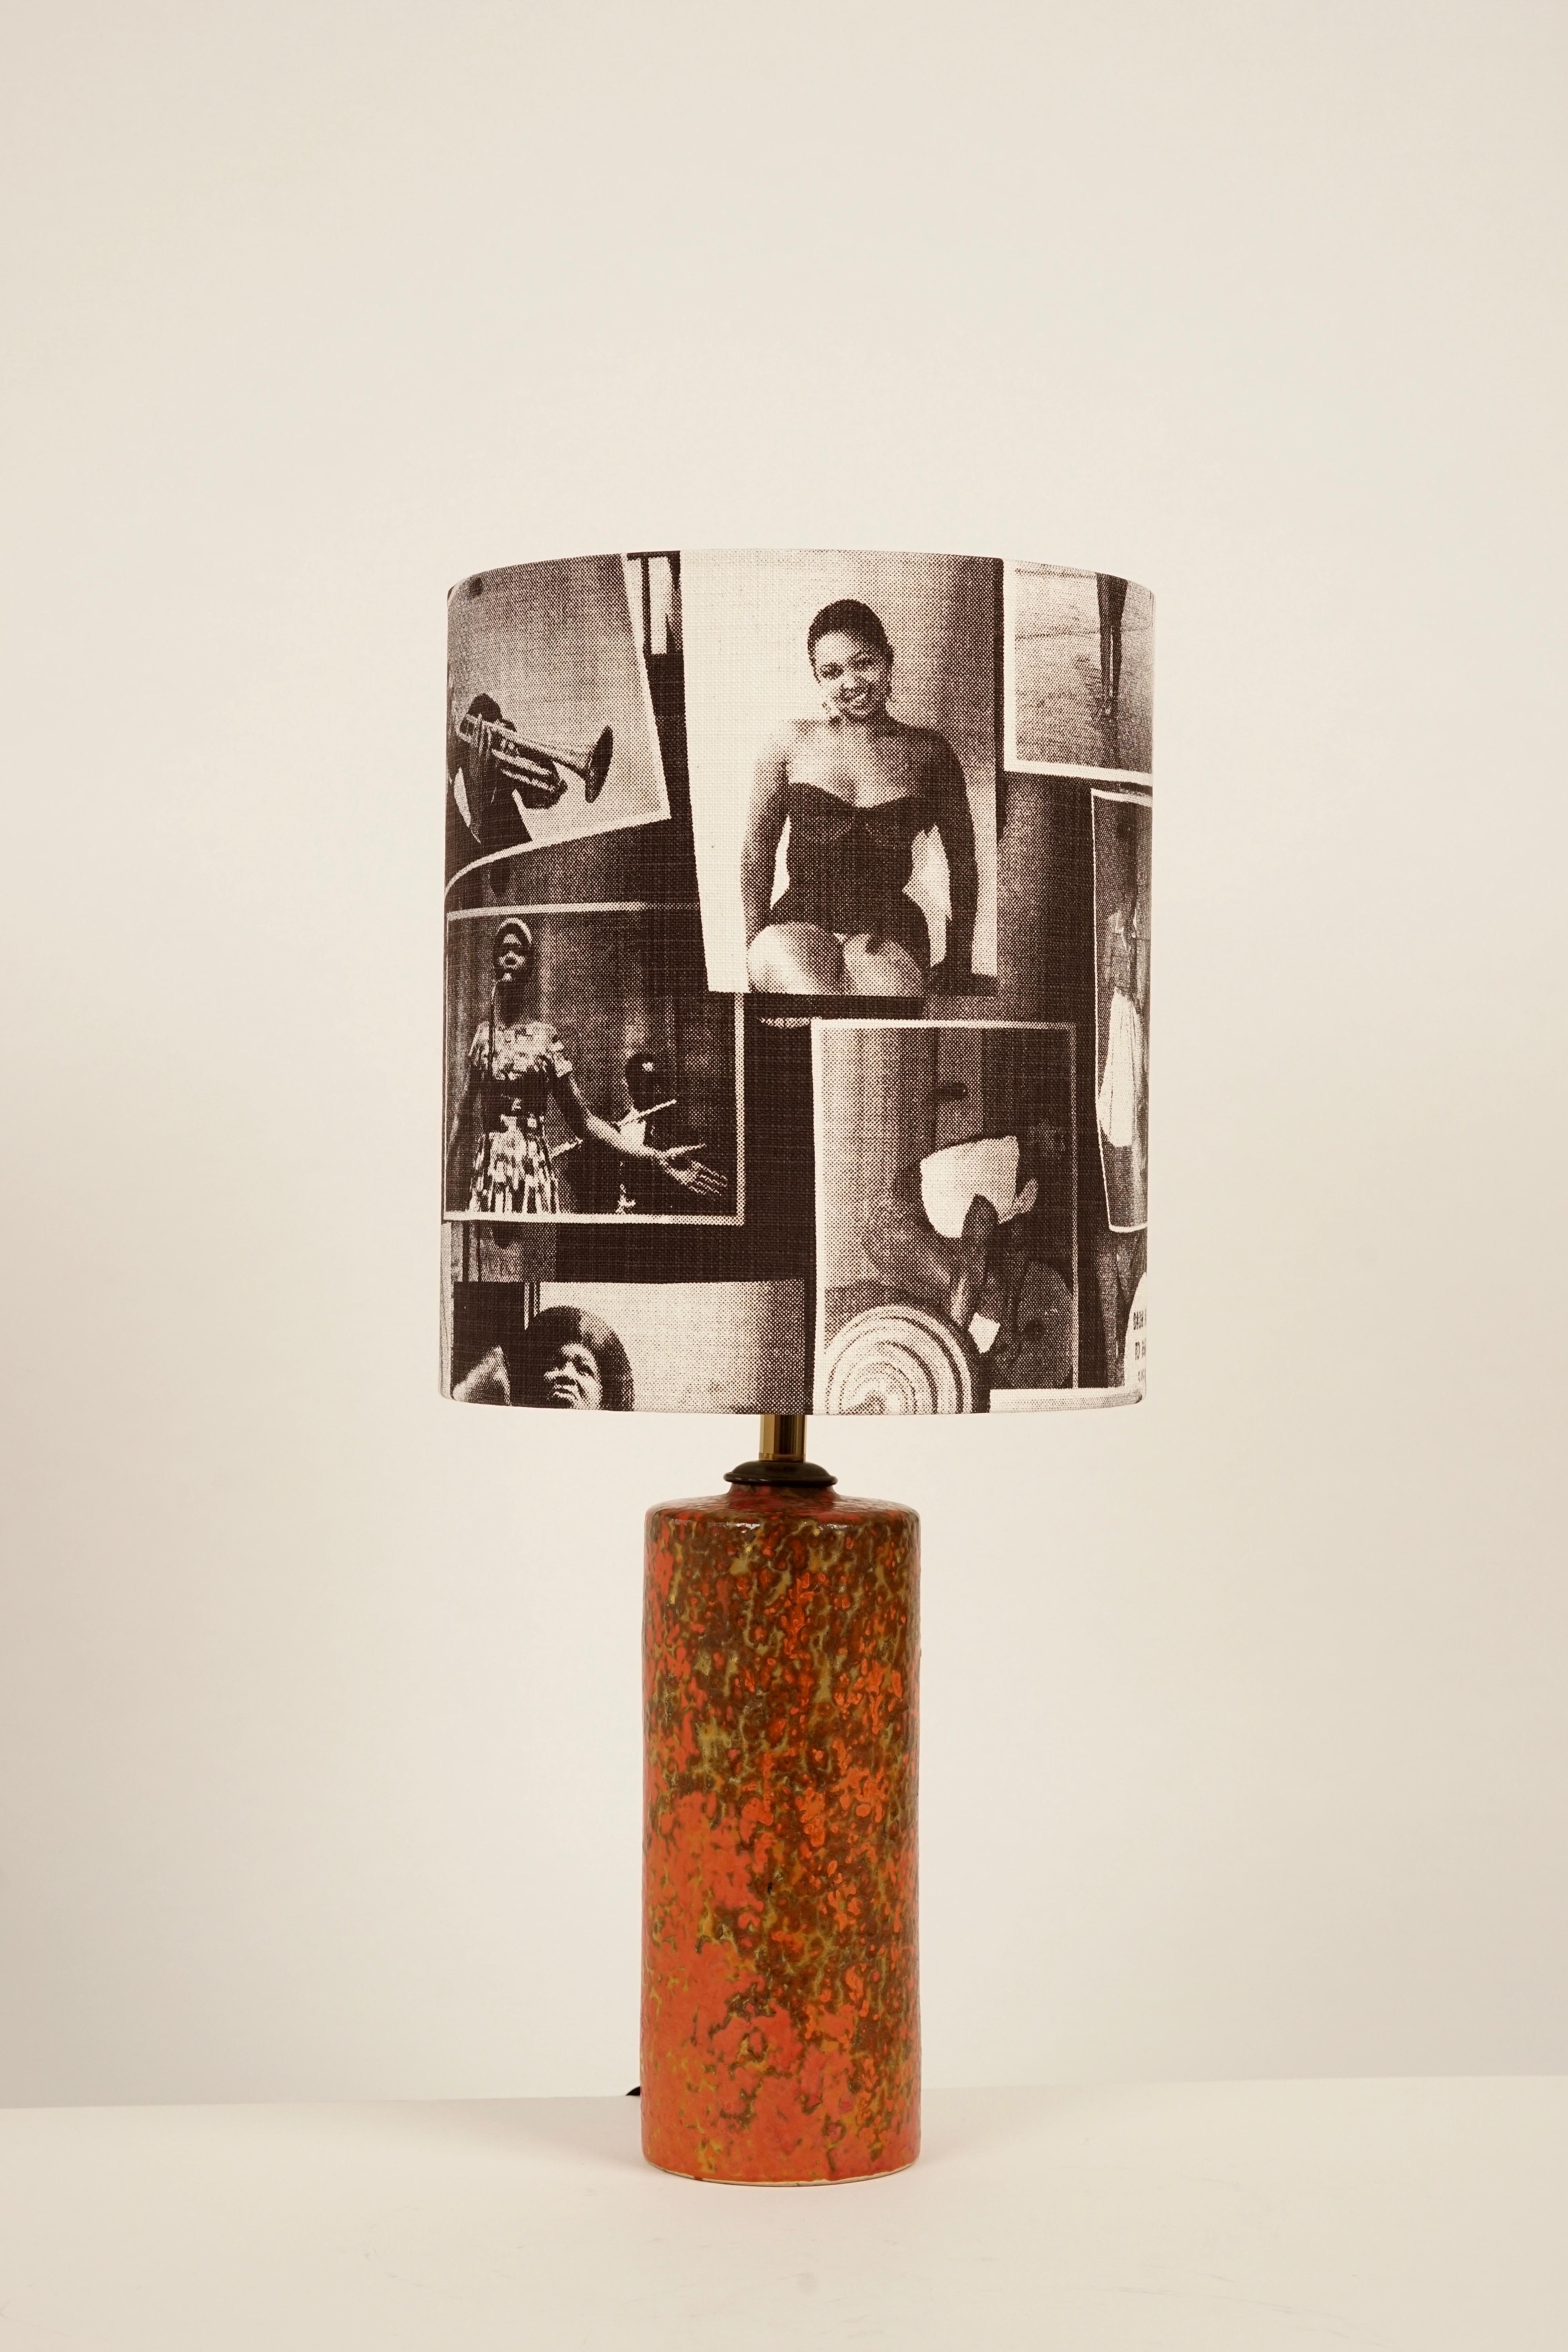 Der Lampenfuß stammt aus ungarischer Studiokeramik, Epoche 1950er Jahre. Die handgeformte Keramik ist orange glasiert.
Der Lampenschirm wurde mit einem Baumwollstoff mit Motiven aus der Zeitschrift Drum neu bezogen.